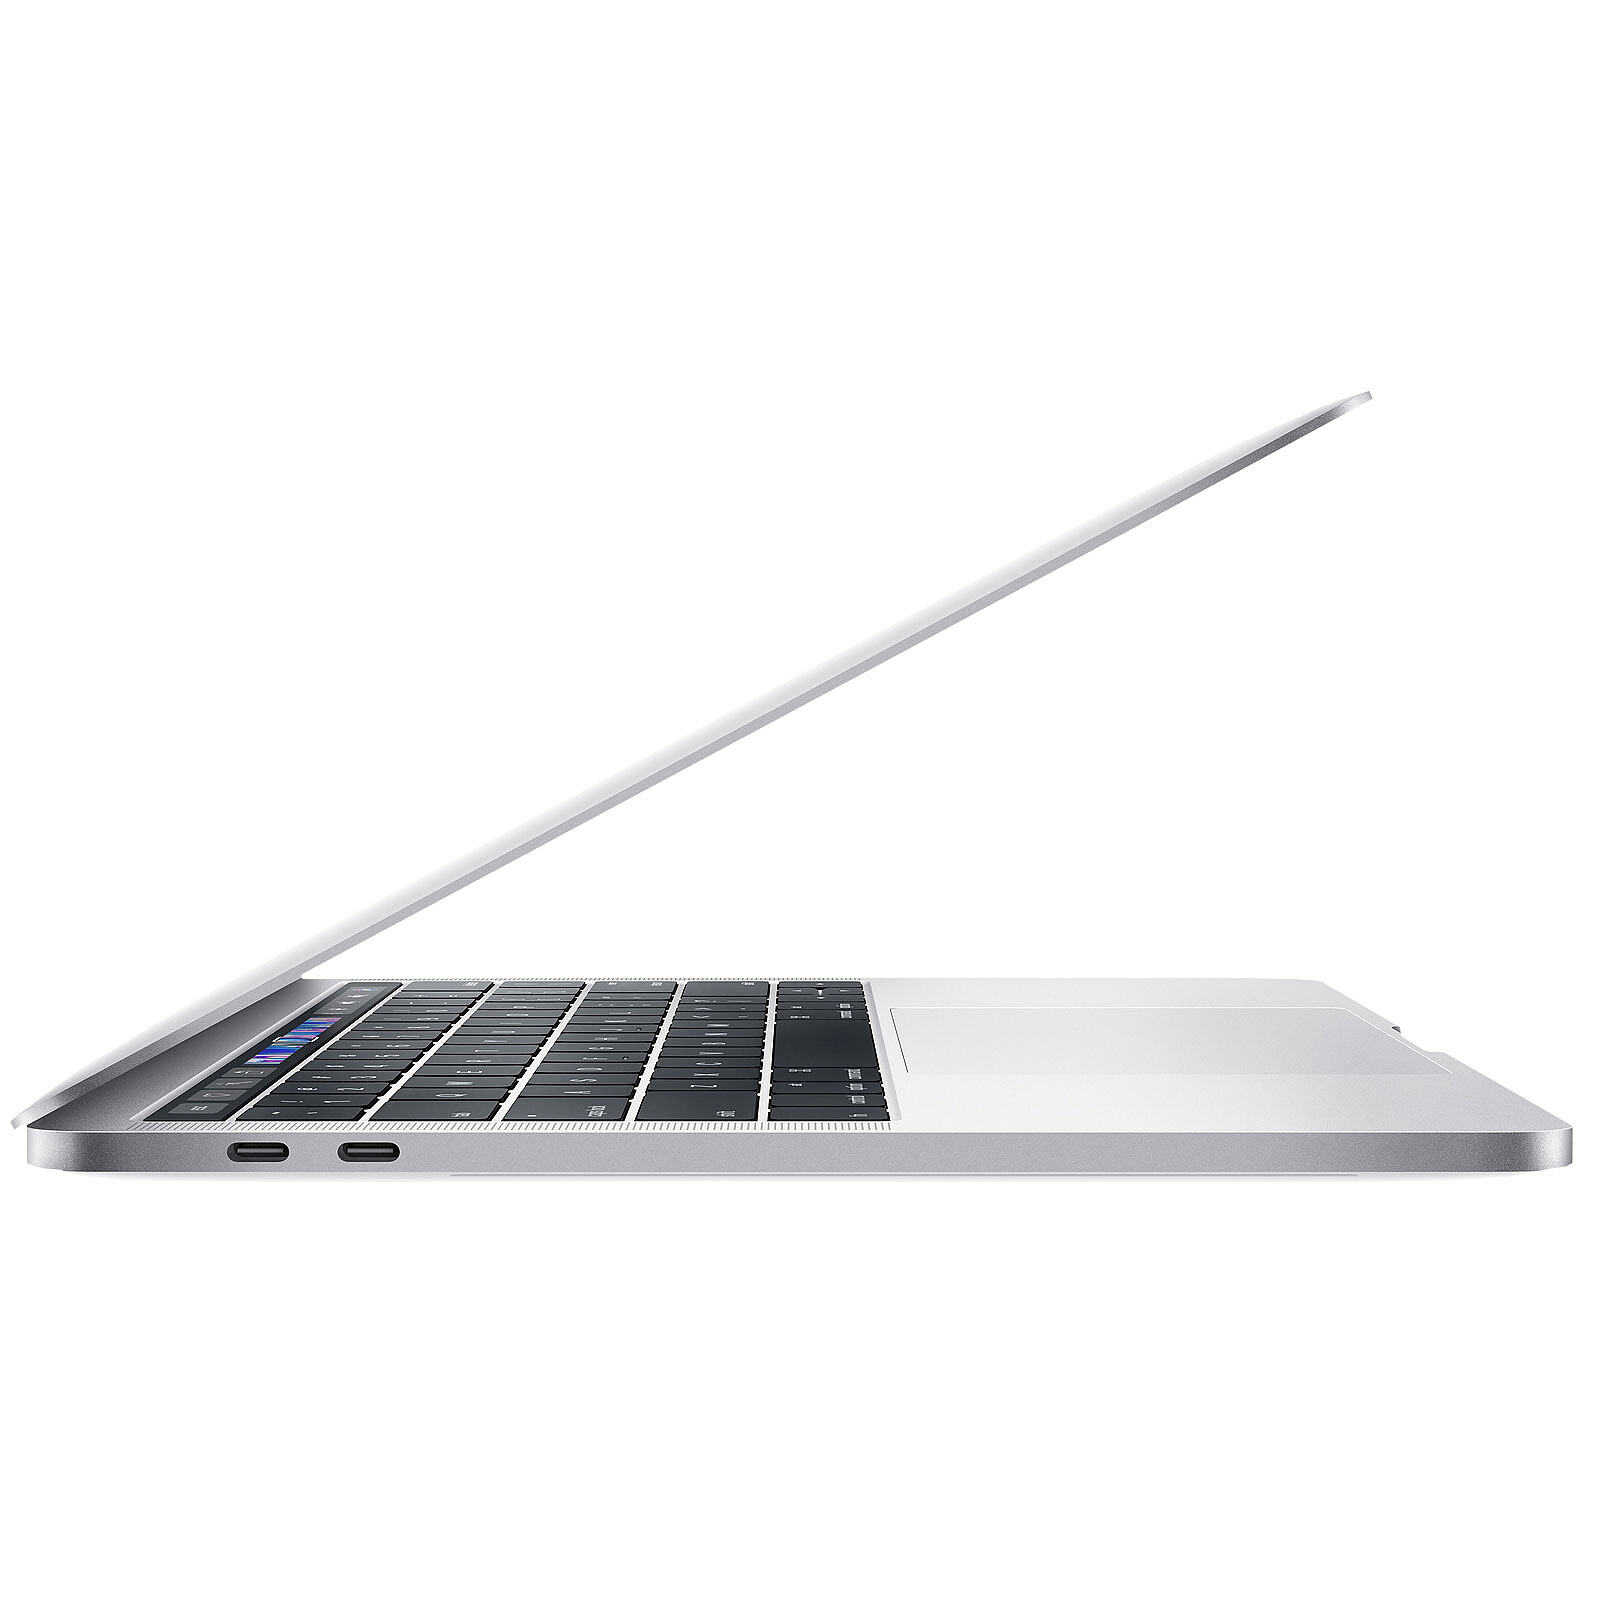 MacBook Pro avec écran Retina 16 pouces reconditionné avec processeur Intel  Core i9 huit cœurs à 2,3 GHz - Gris sidéral - Apple (FR)